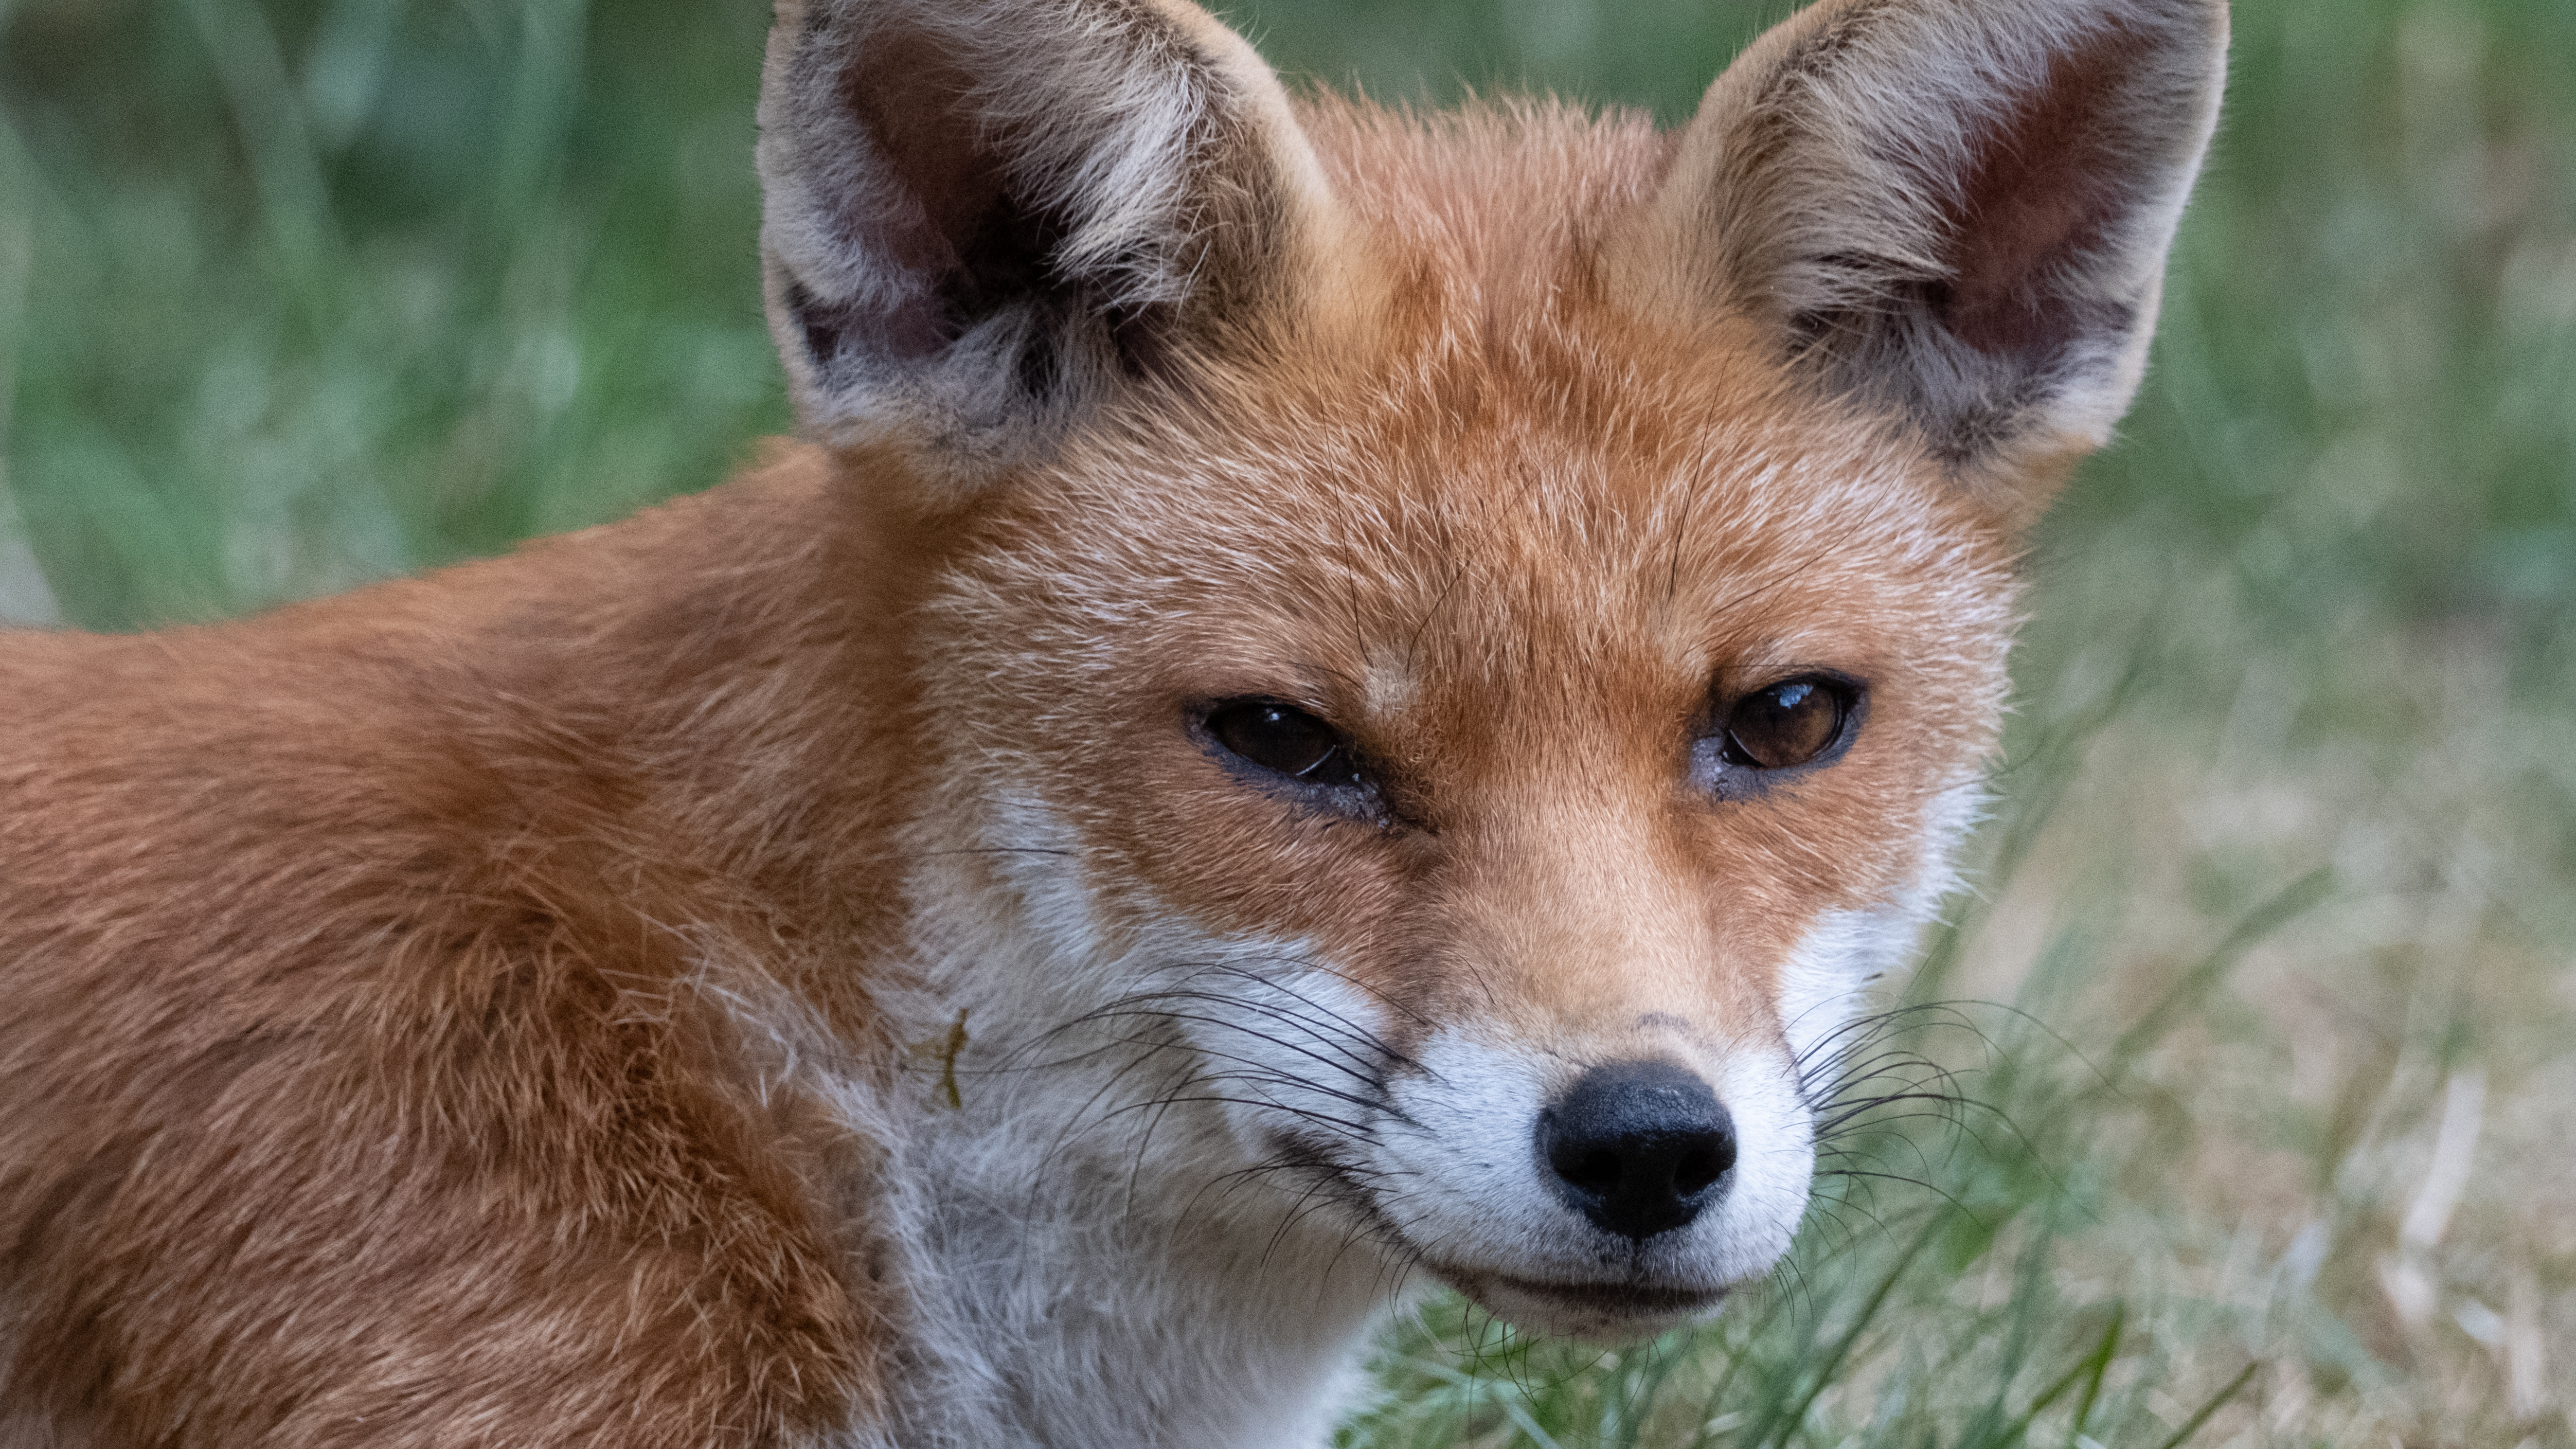 A young fox in a garden